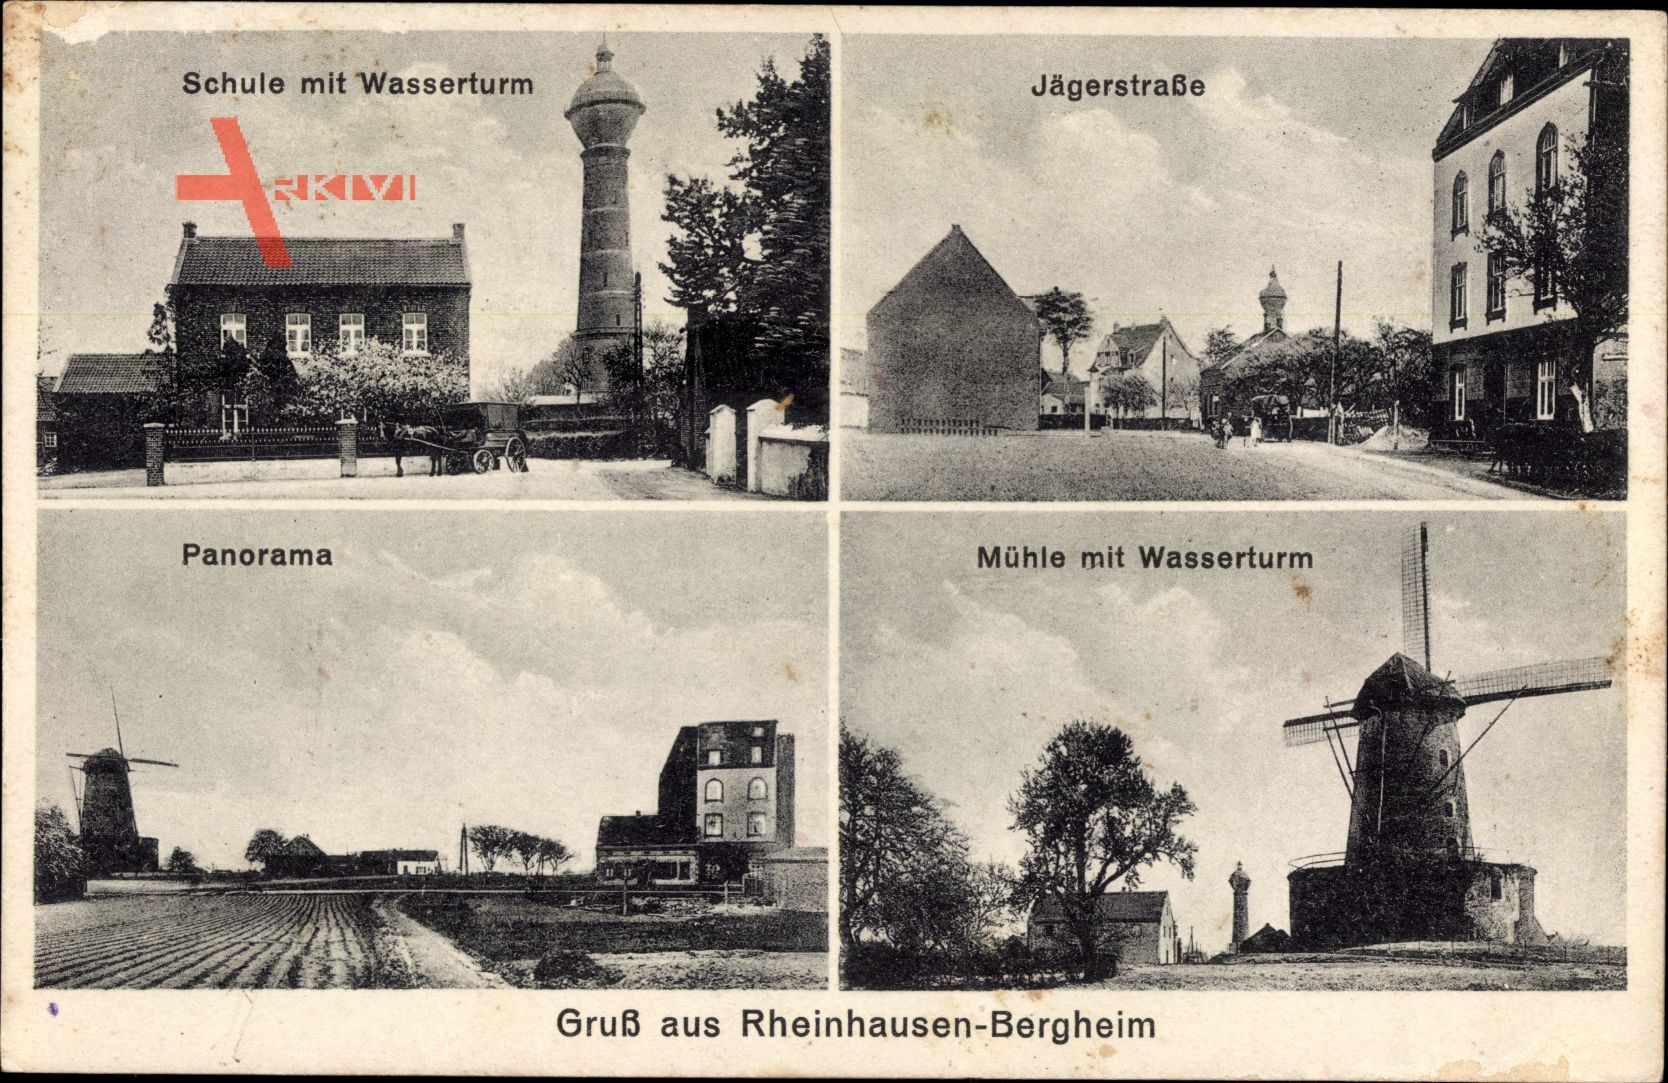 Rheinhausen Bergheim Duisburg, Schule mit Wasserturm, Windmühle, Jägerstraße